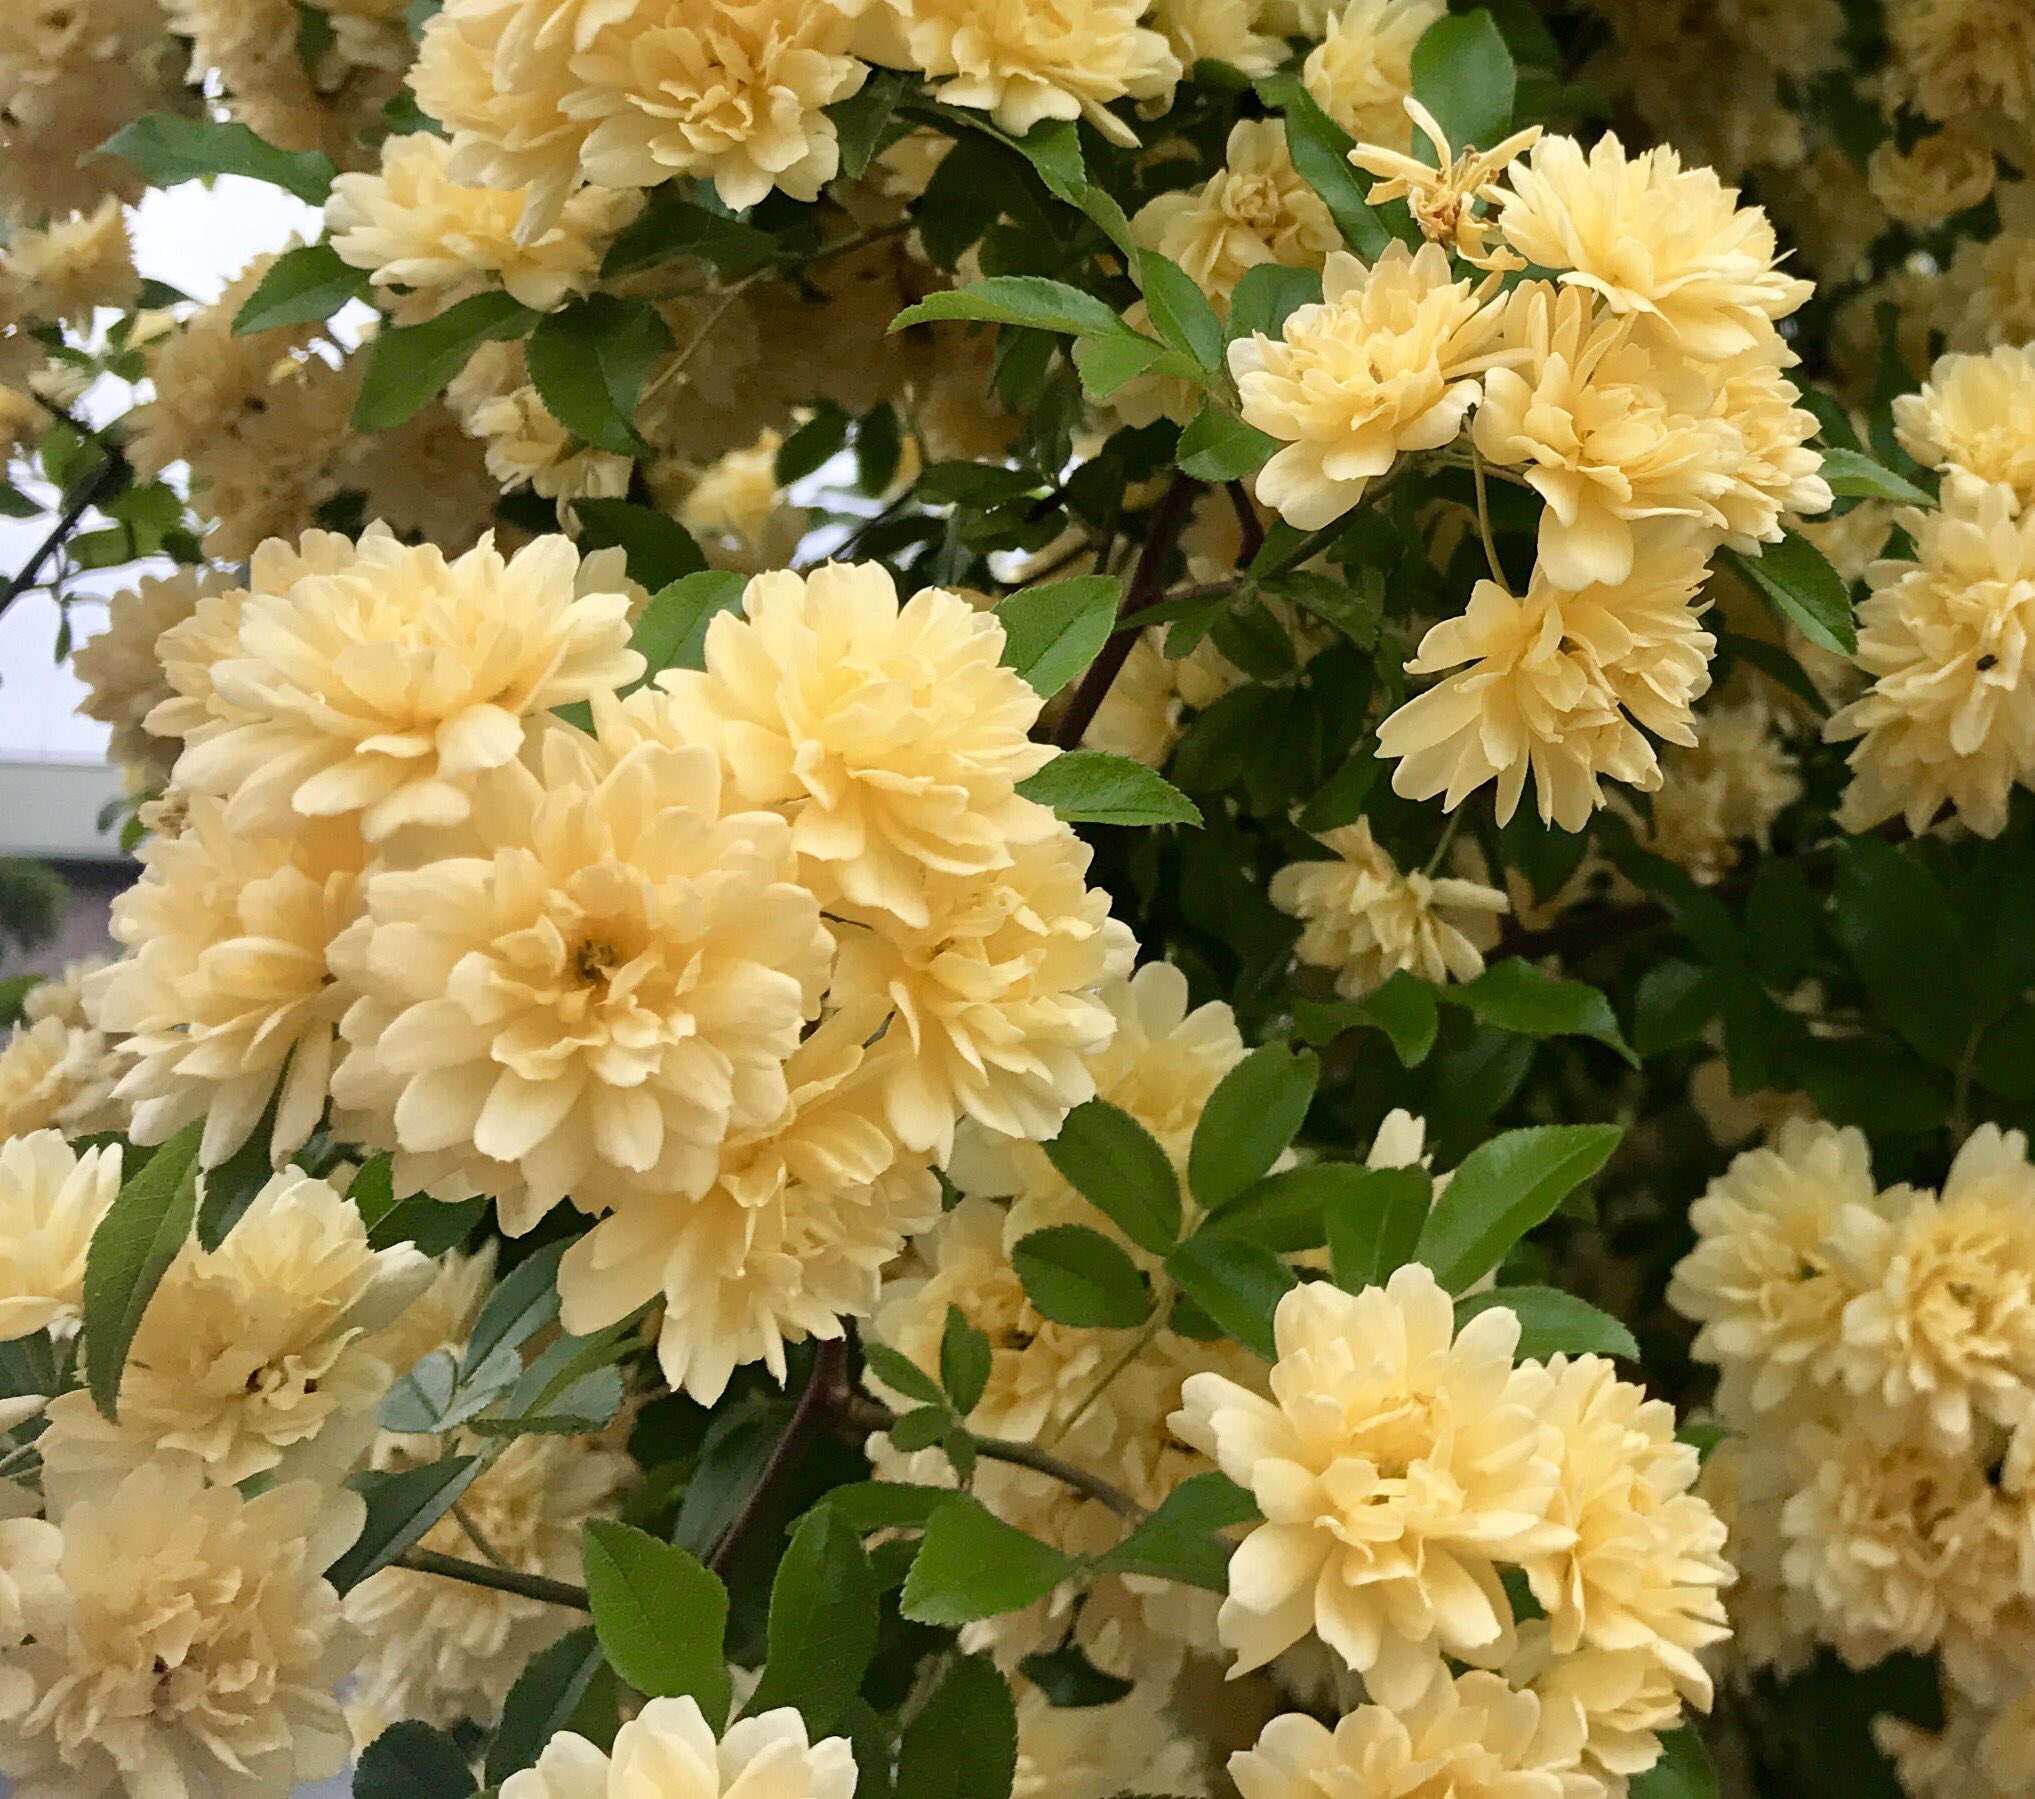 もも Pa Twitter おはようございます 4 25誕生花 モッコウバラ 花言葉 繁盛 別名スダレイバラ バラ科の常緑ツル性低木 春に茂った枝やツルに沢山の花をたわわに咲かせ 黄色の一重と白花には香りがあります また一重の枝にはトゲがありますが八重にはトゲ